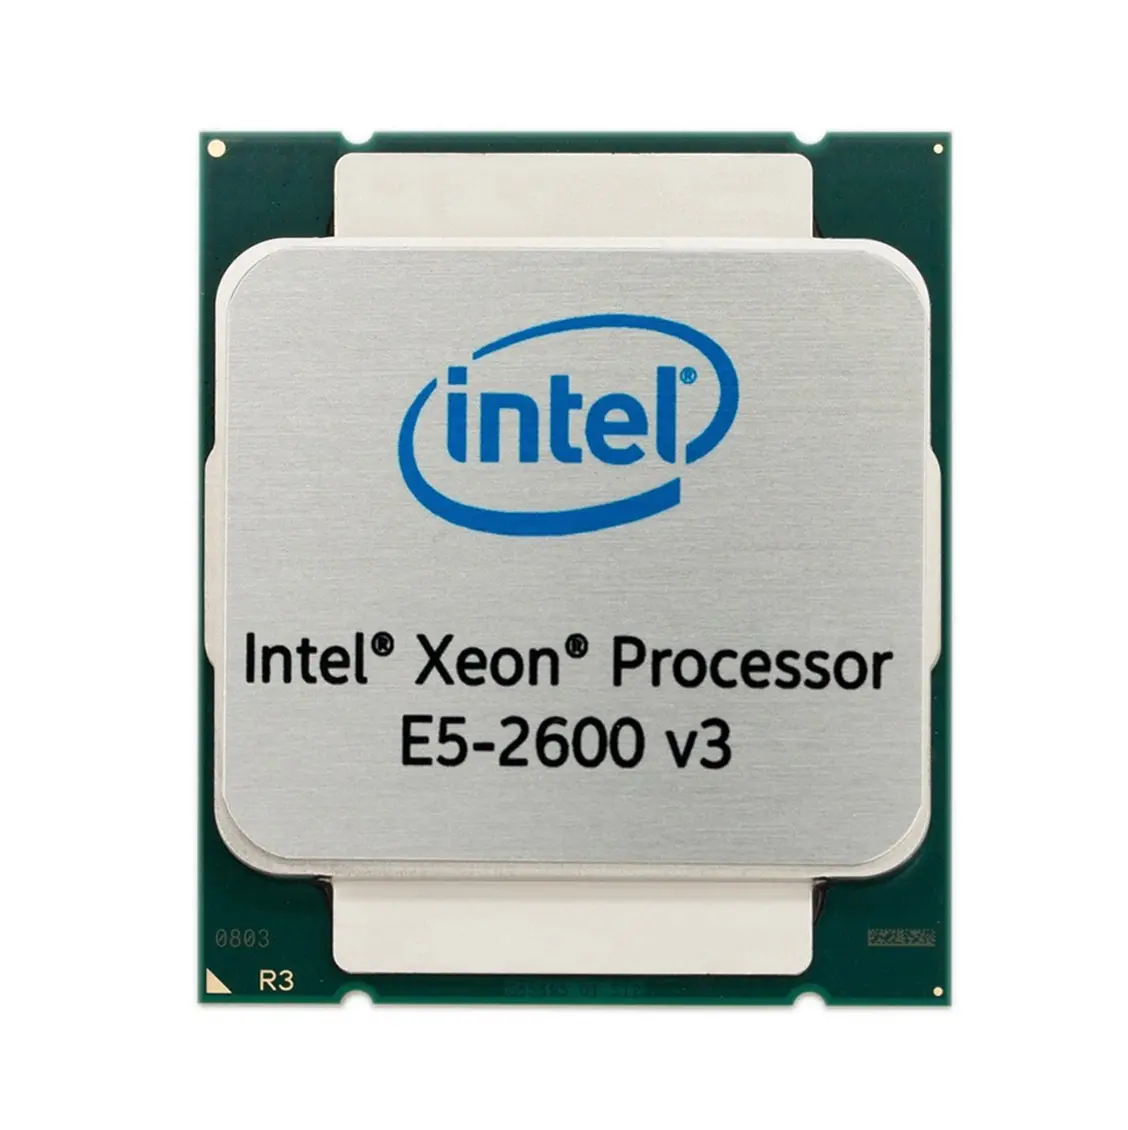 A6S94AA HP Intel Xeon Six-Core E5-2667 2.9Ghz 15MB L3 Cache 8GT/s QPI Socket Fclga-2011 32nm 130w Processor Complete Kit for Z820 workstat